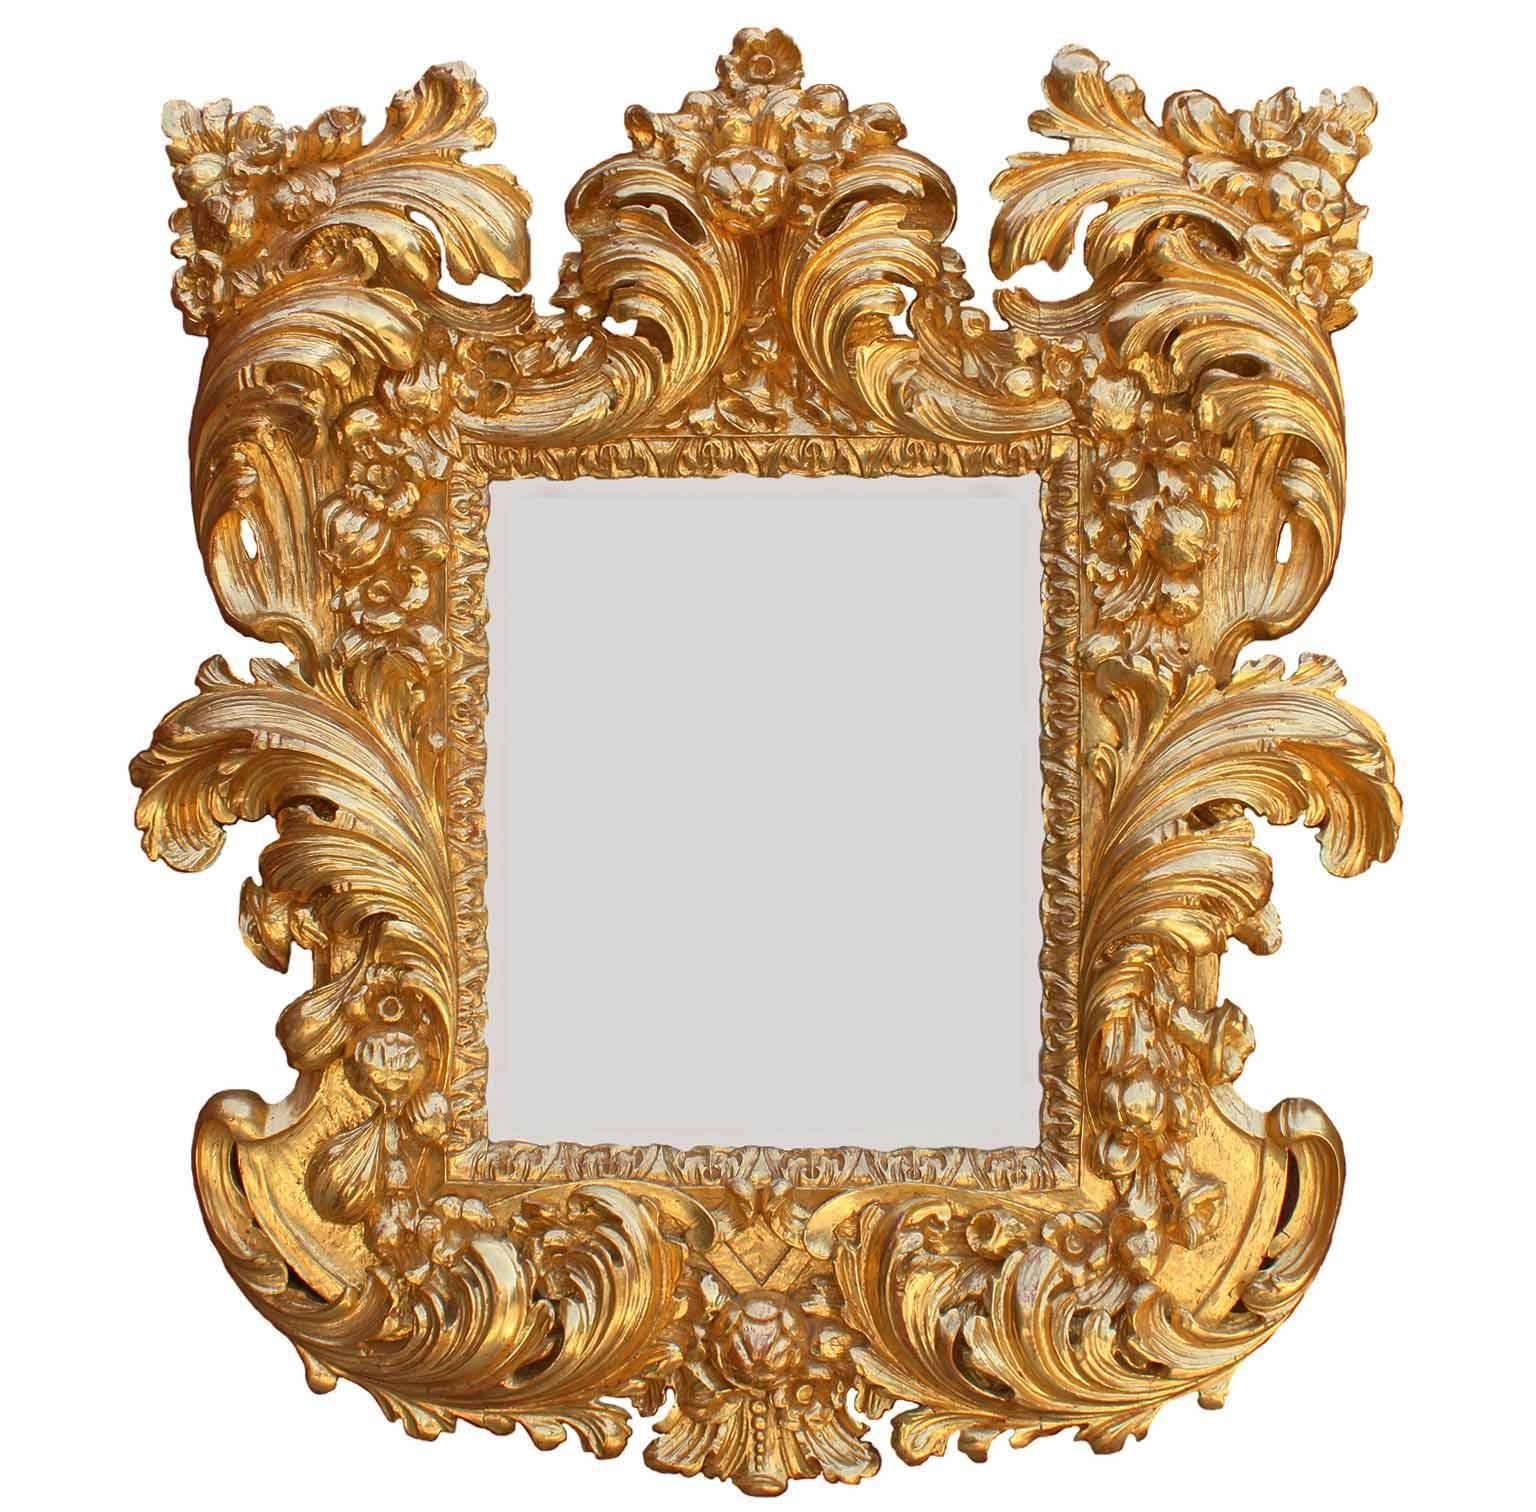 Cadre de miroir en bois doré florentin de style baroque italien du XIXe siècle, vigoureusement sculpté. Le cadre est orné de volutes, d'acanthes, de fruits et de motifs floraux, et est équipé d'une plaque de miroir biseautée ultérieure. Toutes les